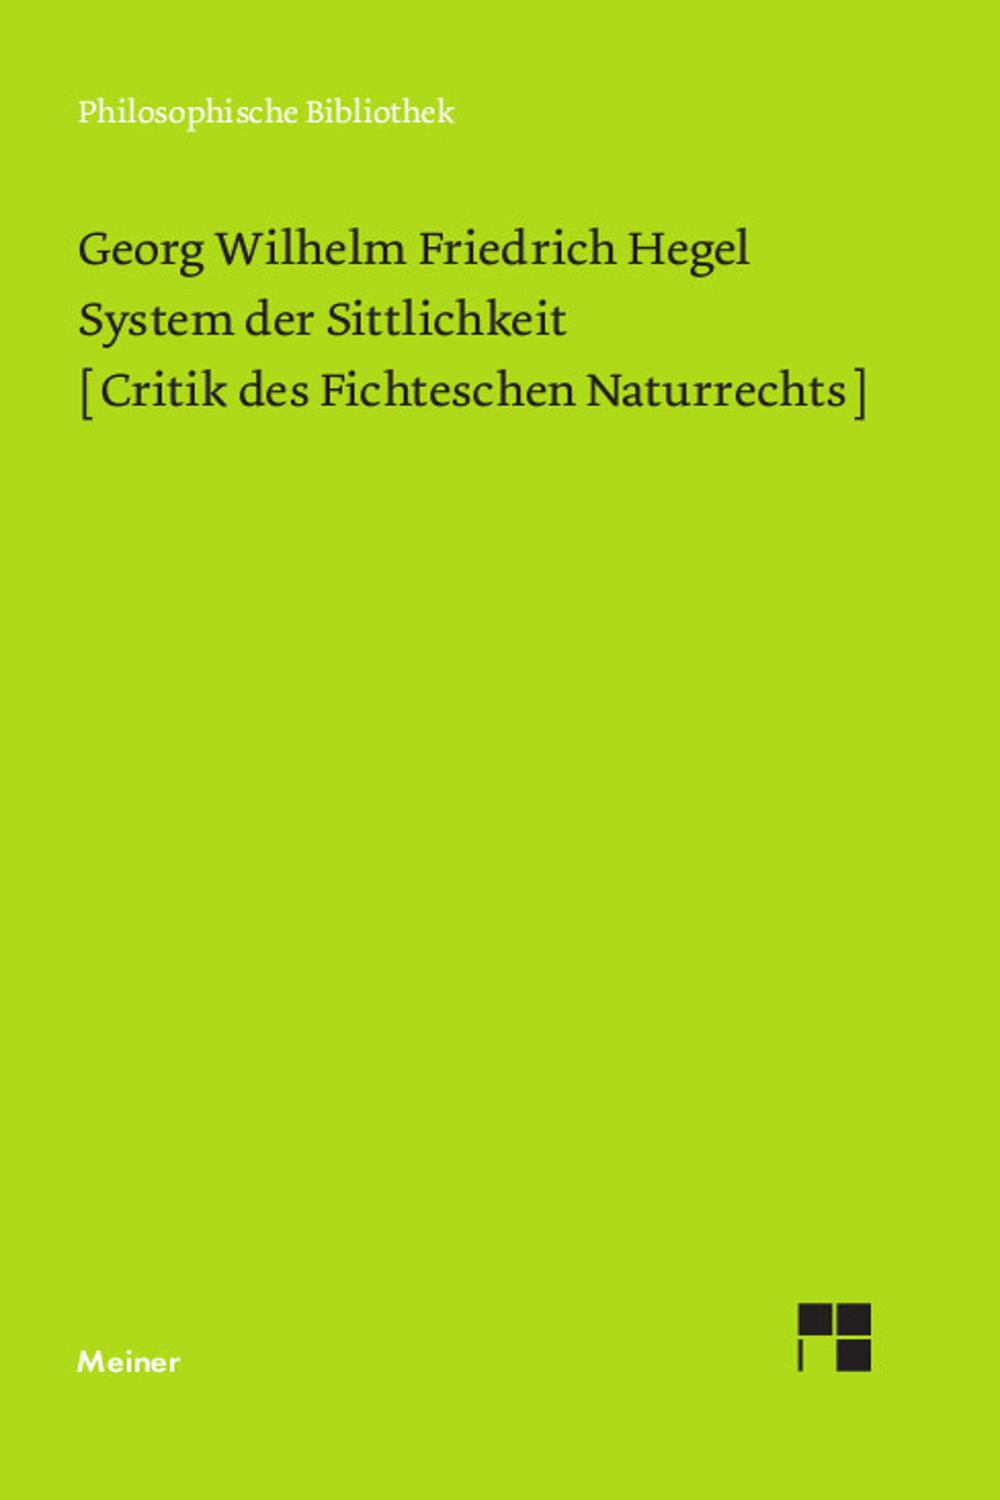 System der Sittlichkeit - Georg Wilhelm Friedrich Hegel